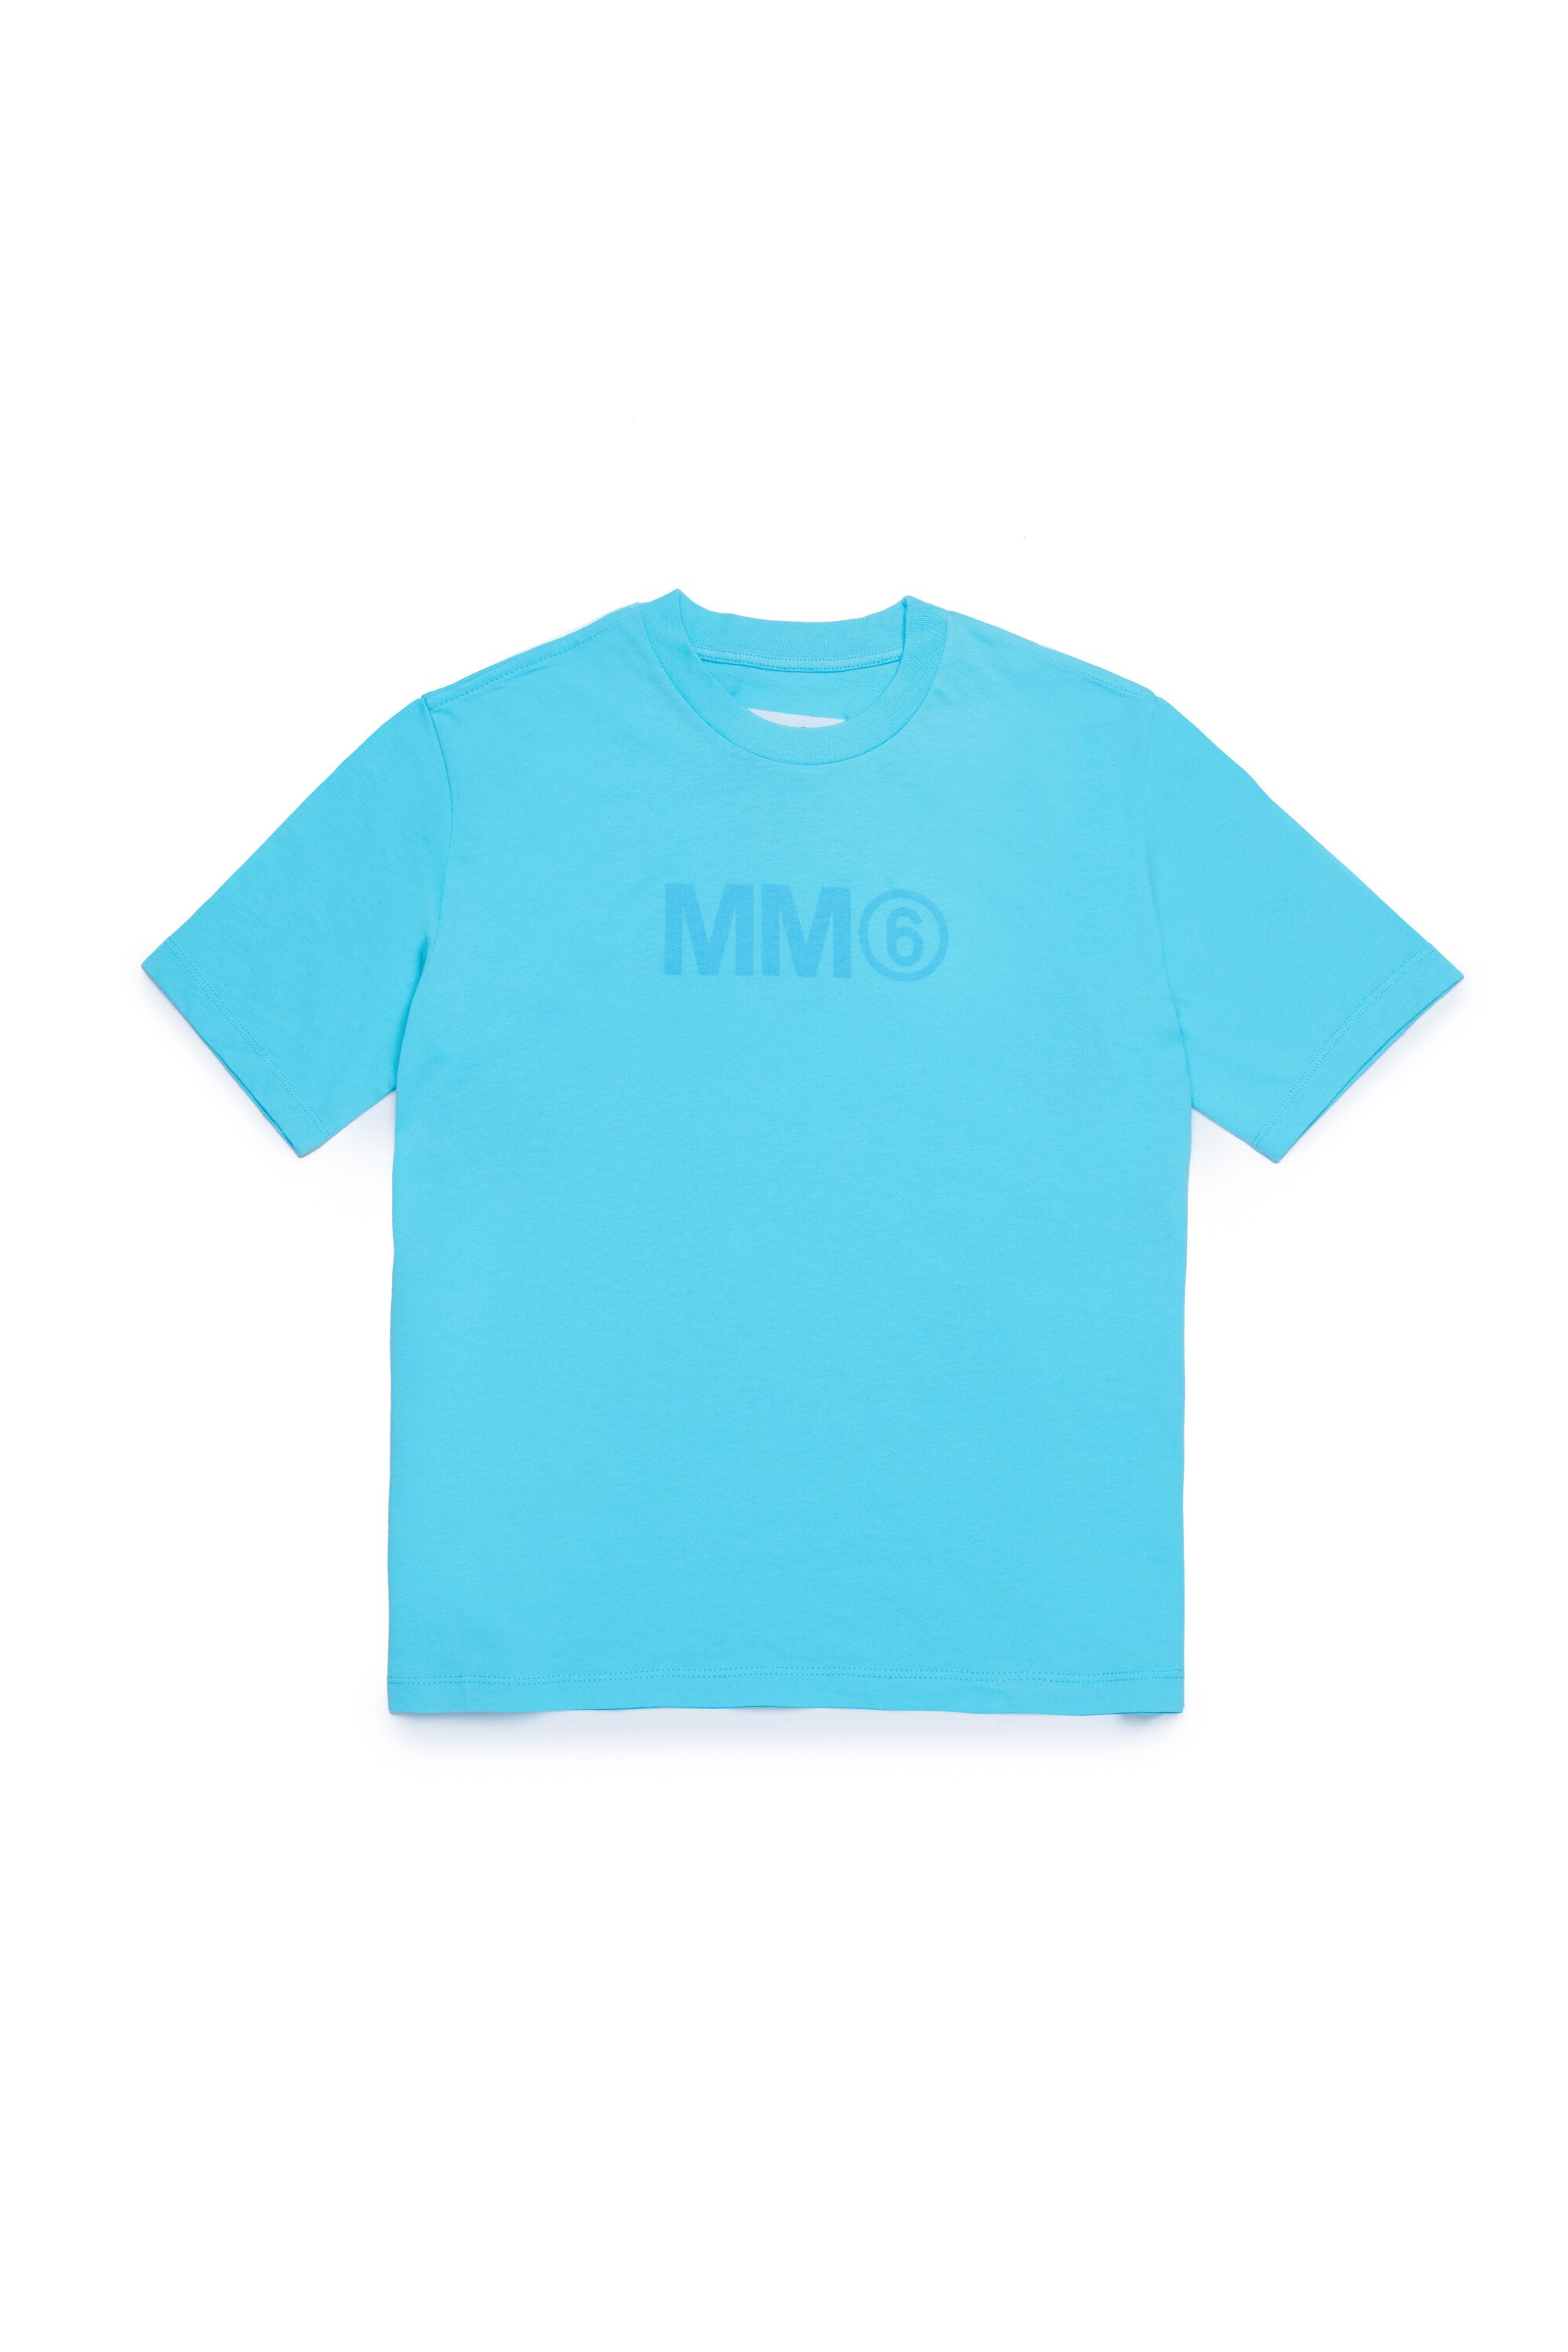 MM6ブランドTシャツ - 3枚セット